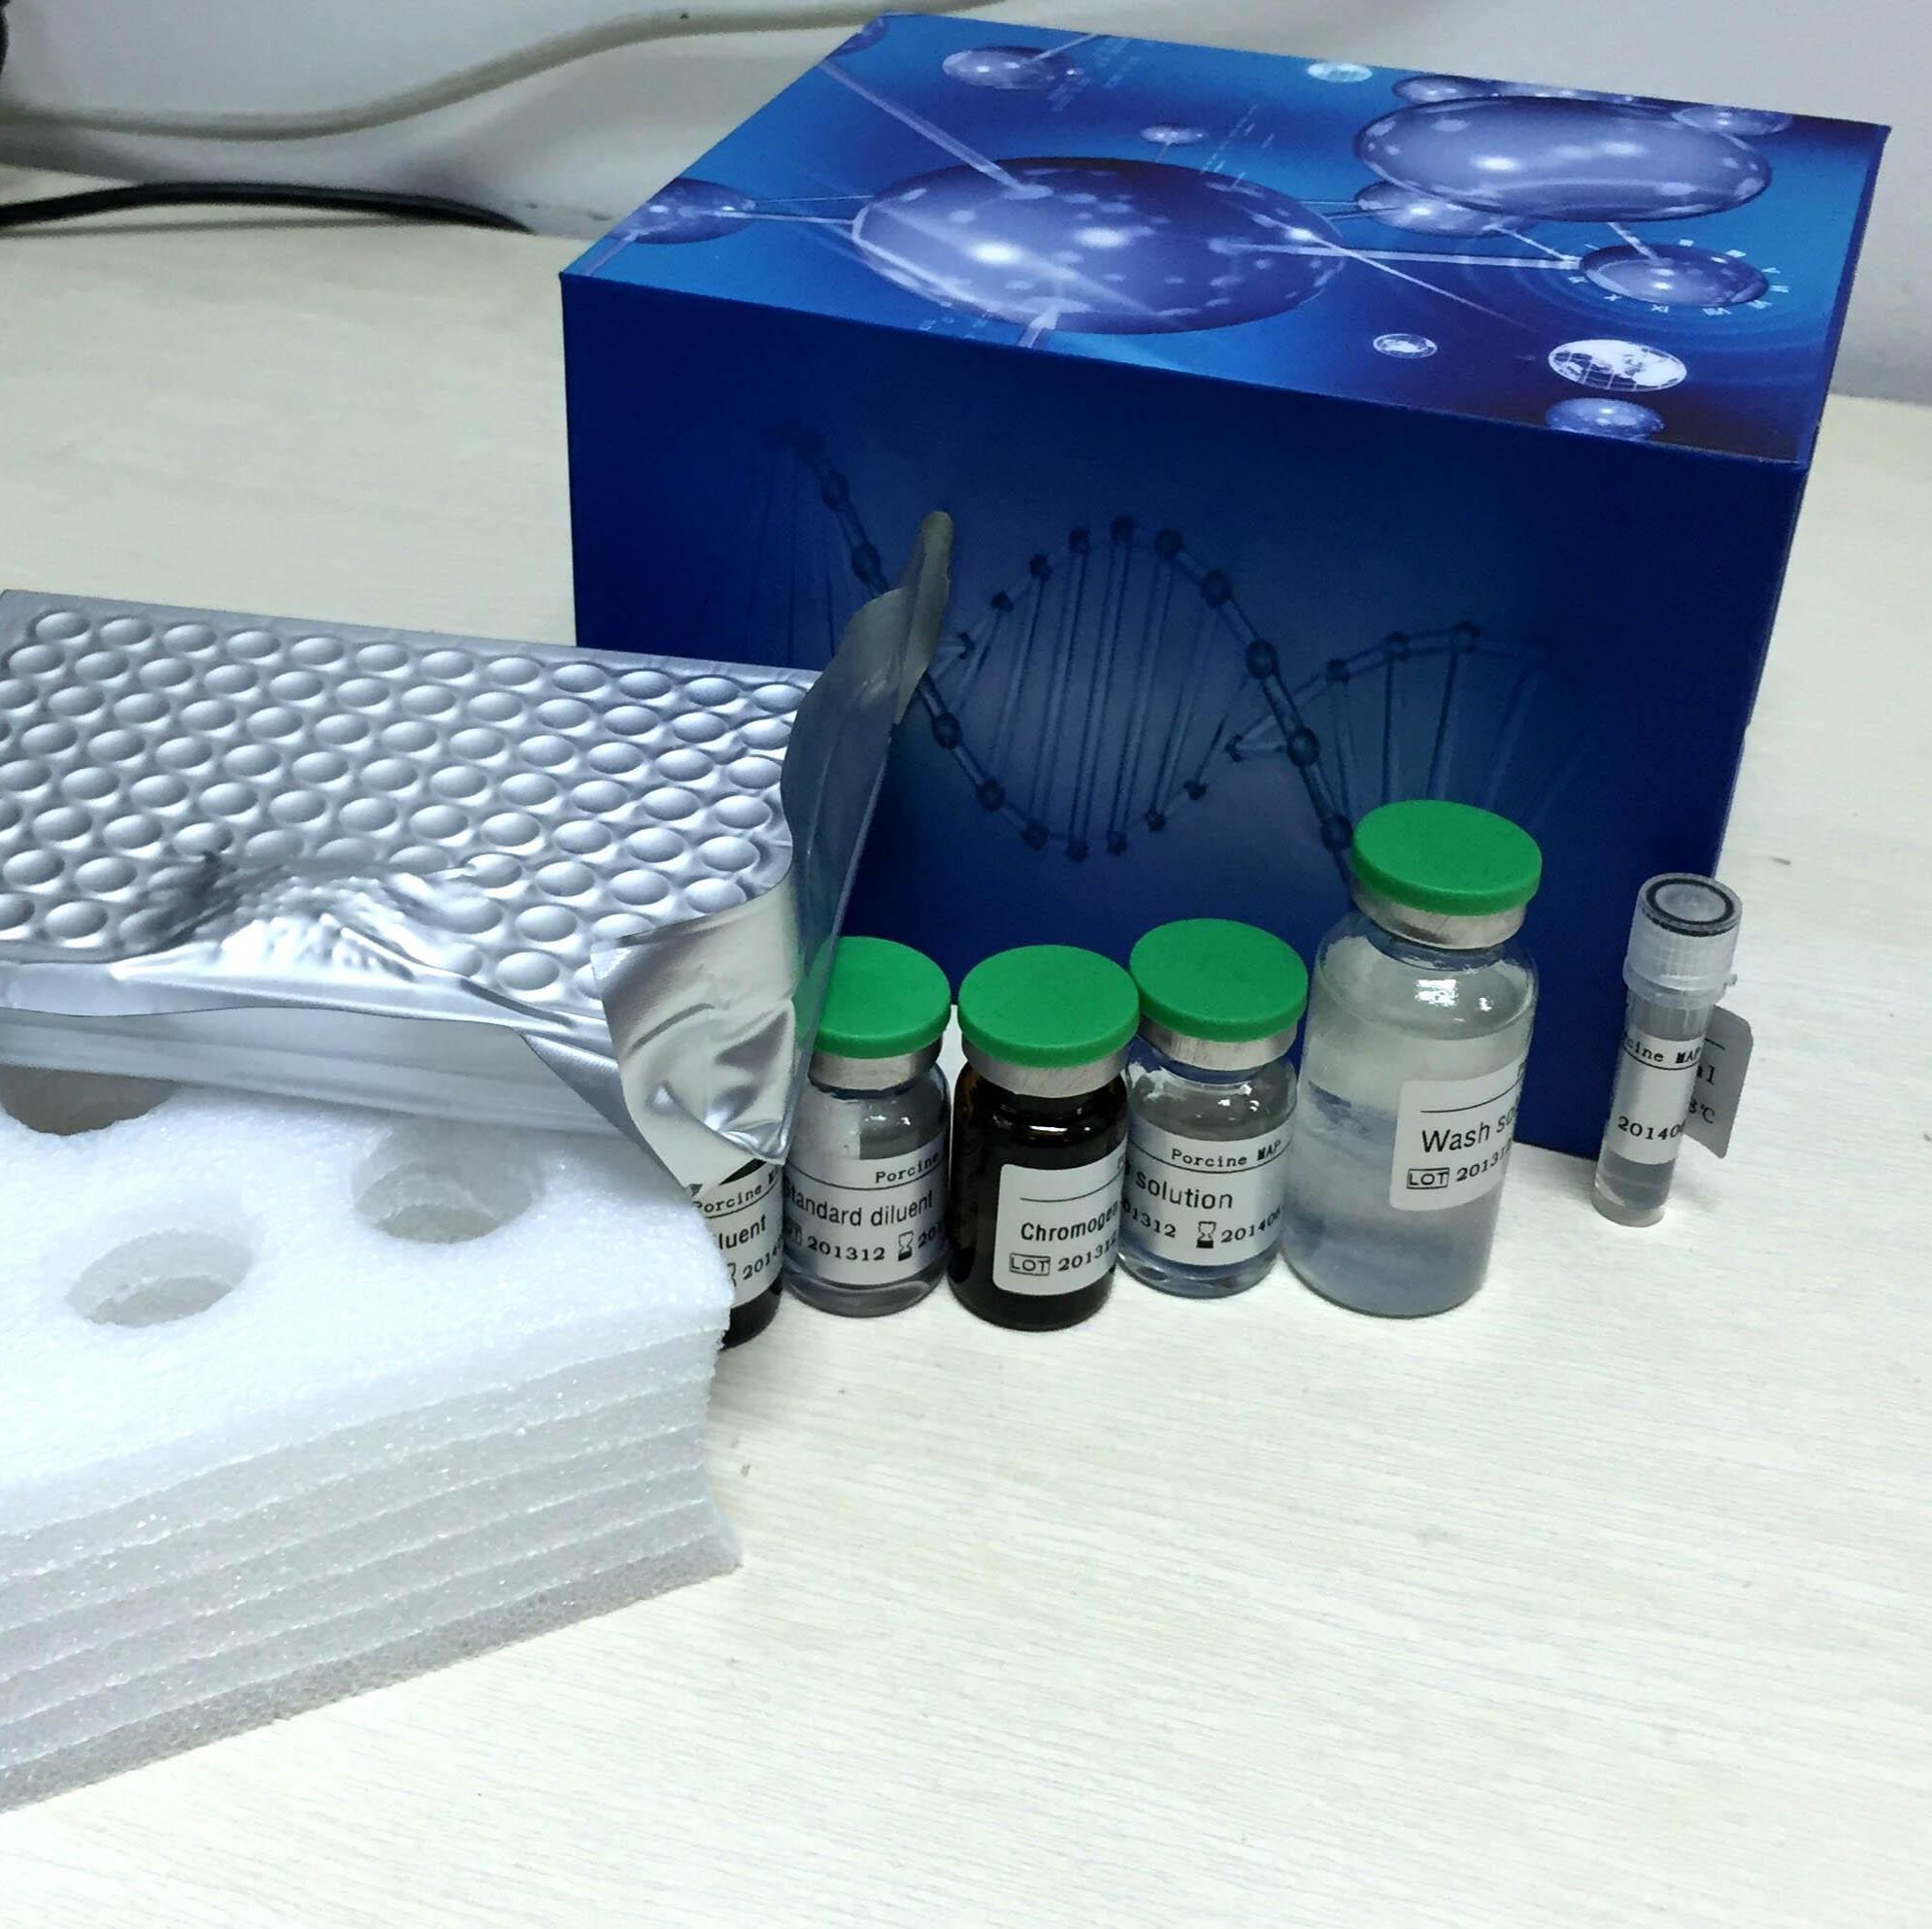 人免疫球蛋白G Fc段受体Ⅰ(FcγRⅠ/CD64)ELISA试剂盒